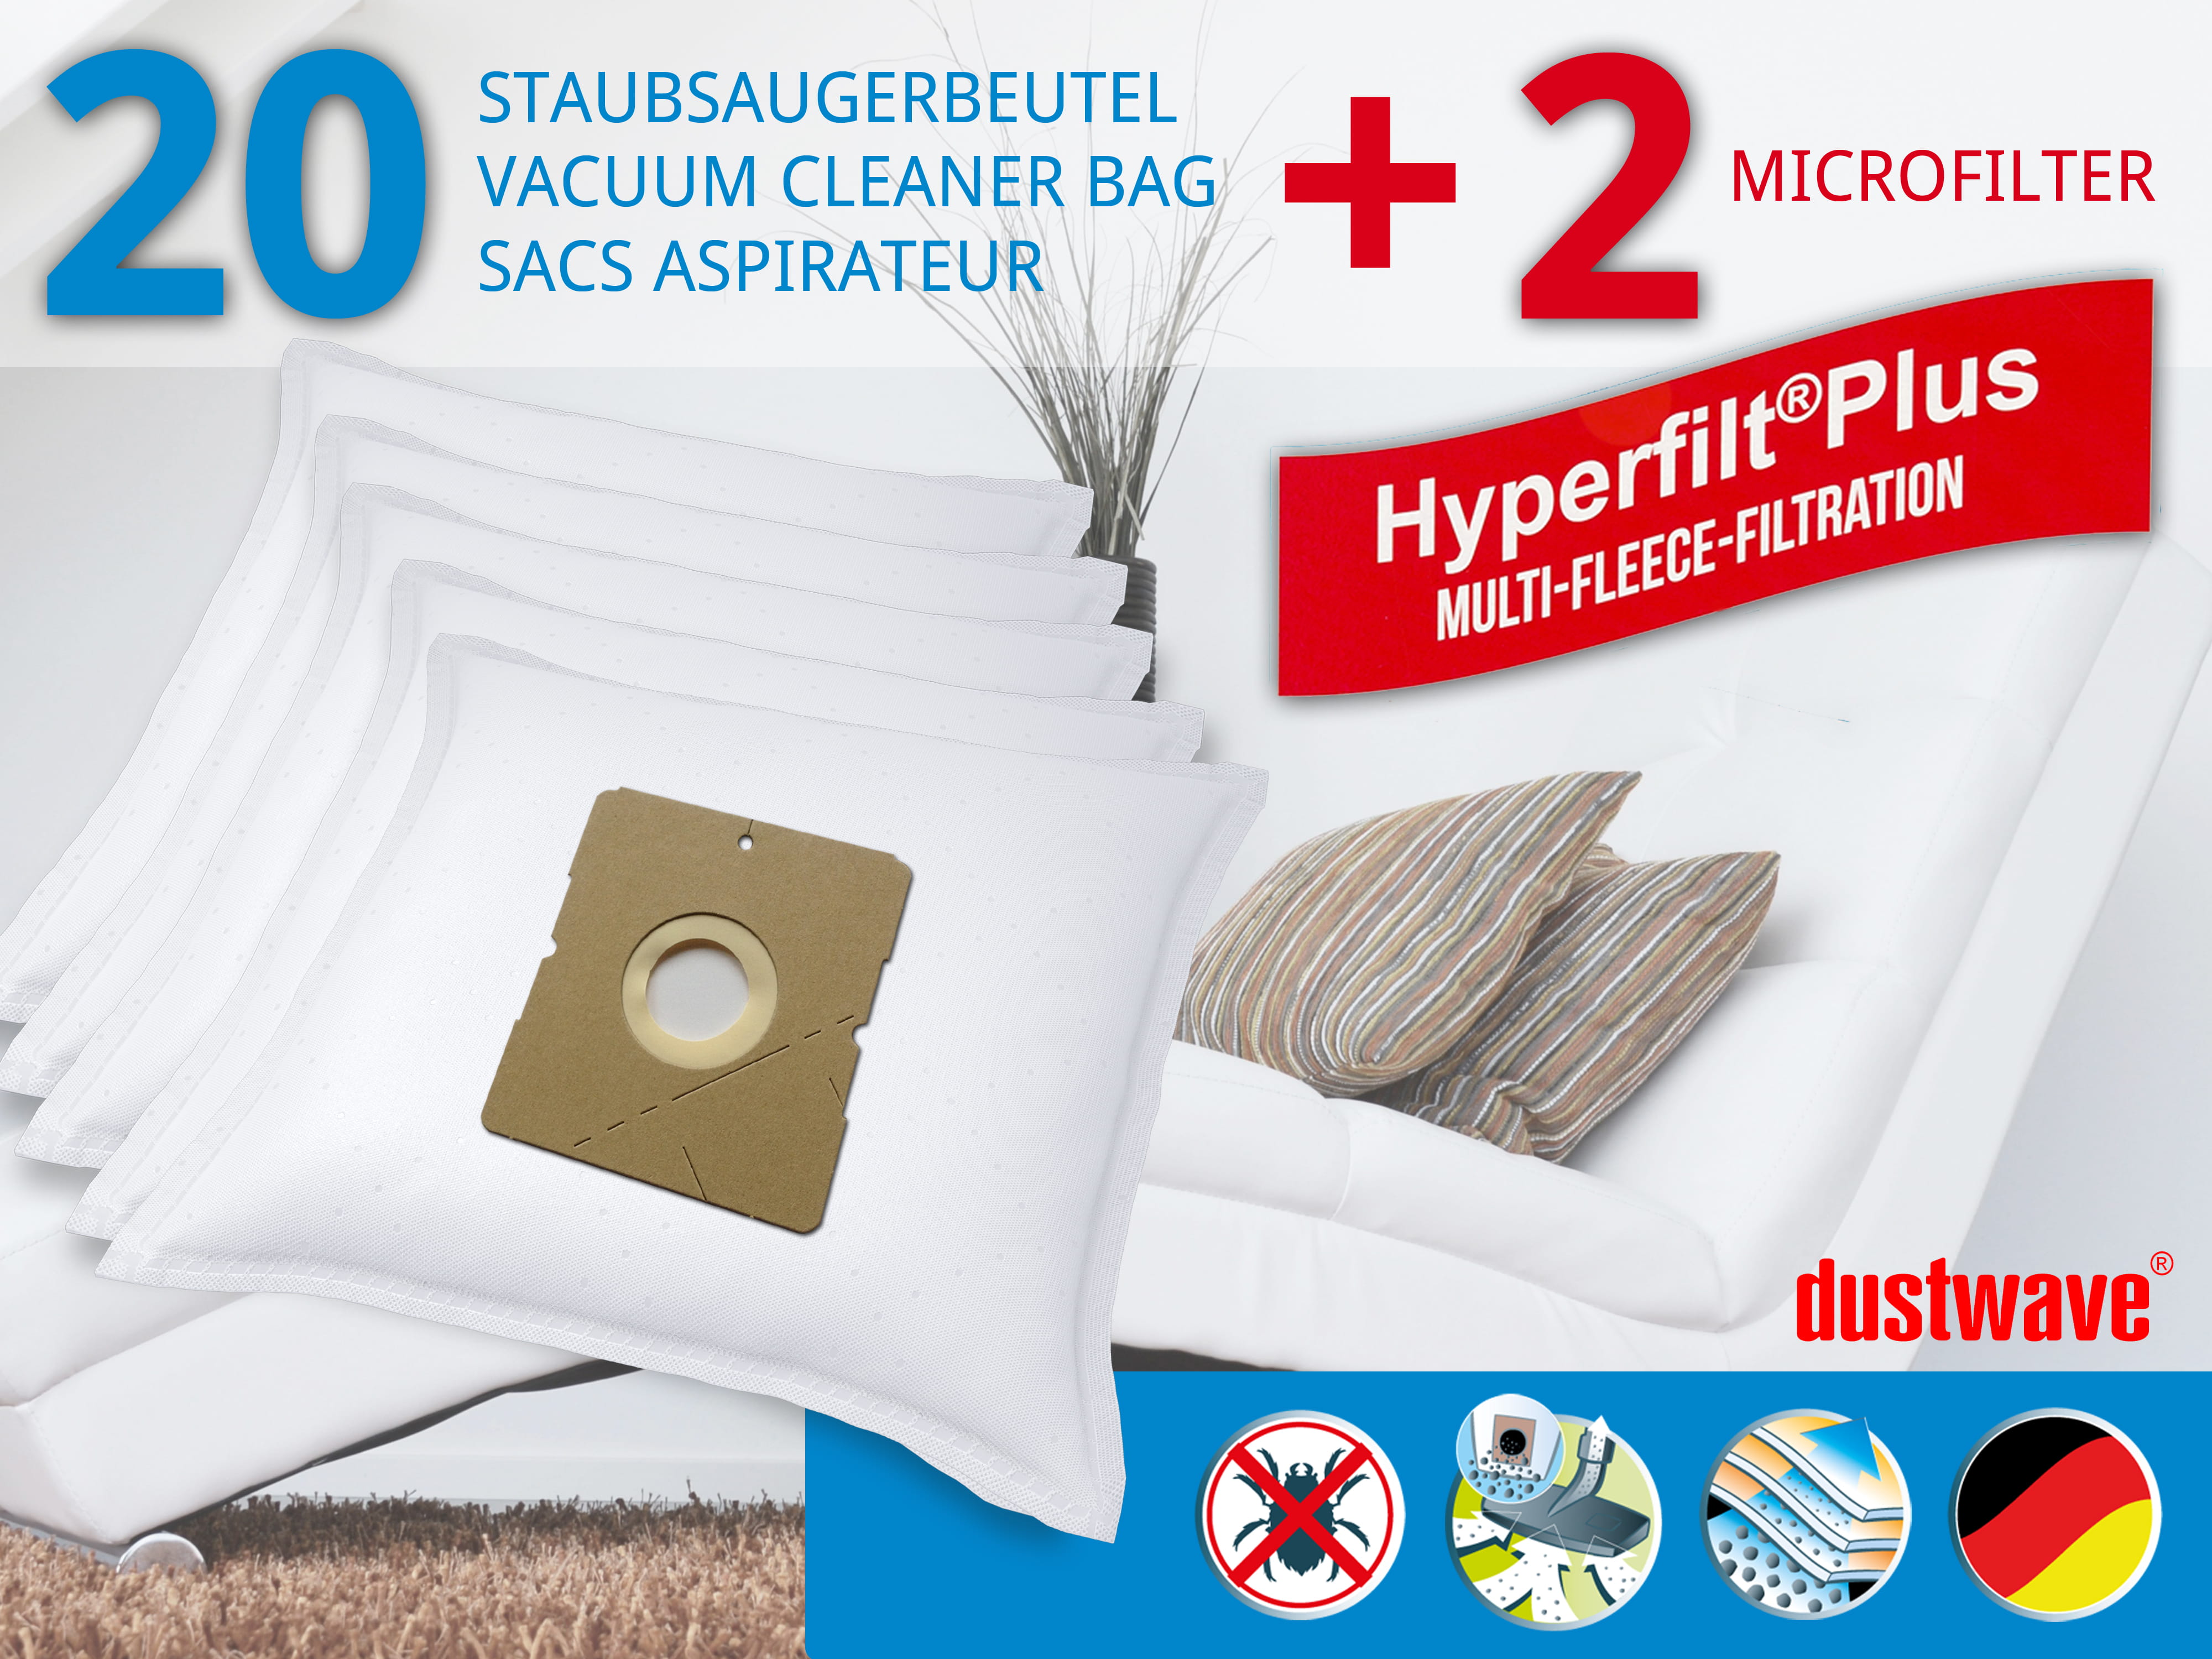 Dustwave® 20 Staubsaugerbeutel für Hoover TDC1800 001 - hocheffizient, mehrlagiges Mikrovlies mit Hygieneverschluss - Made in Germany